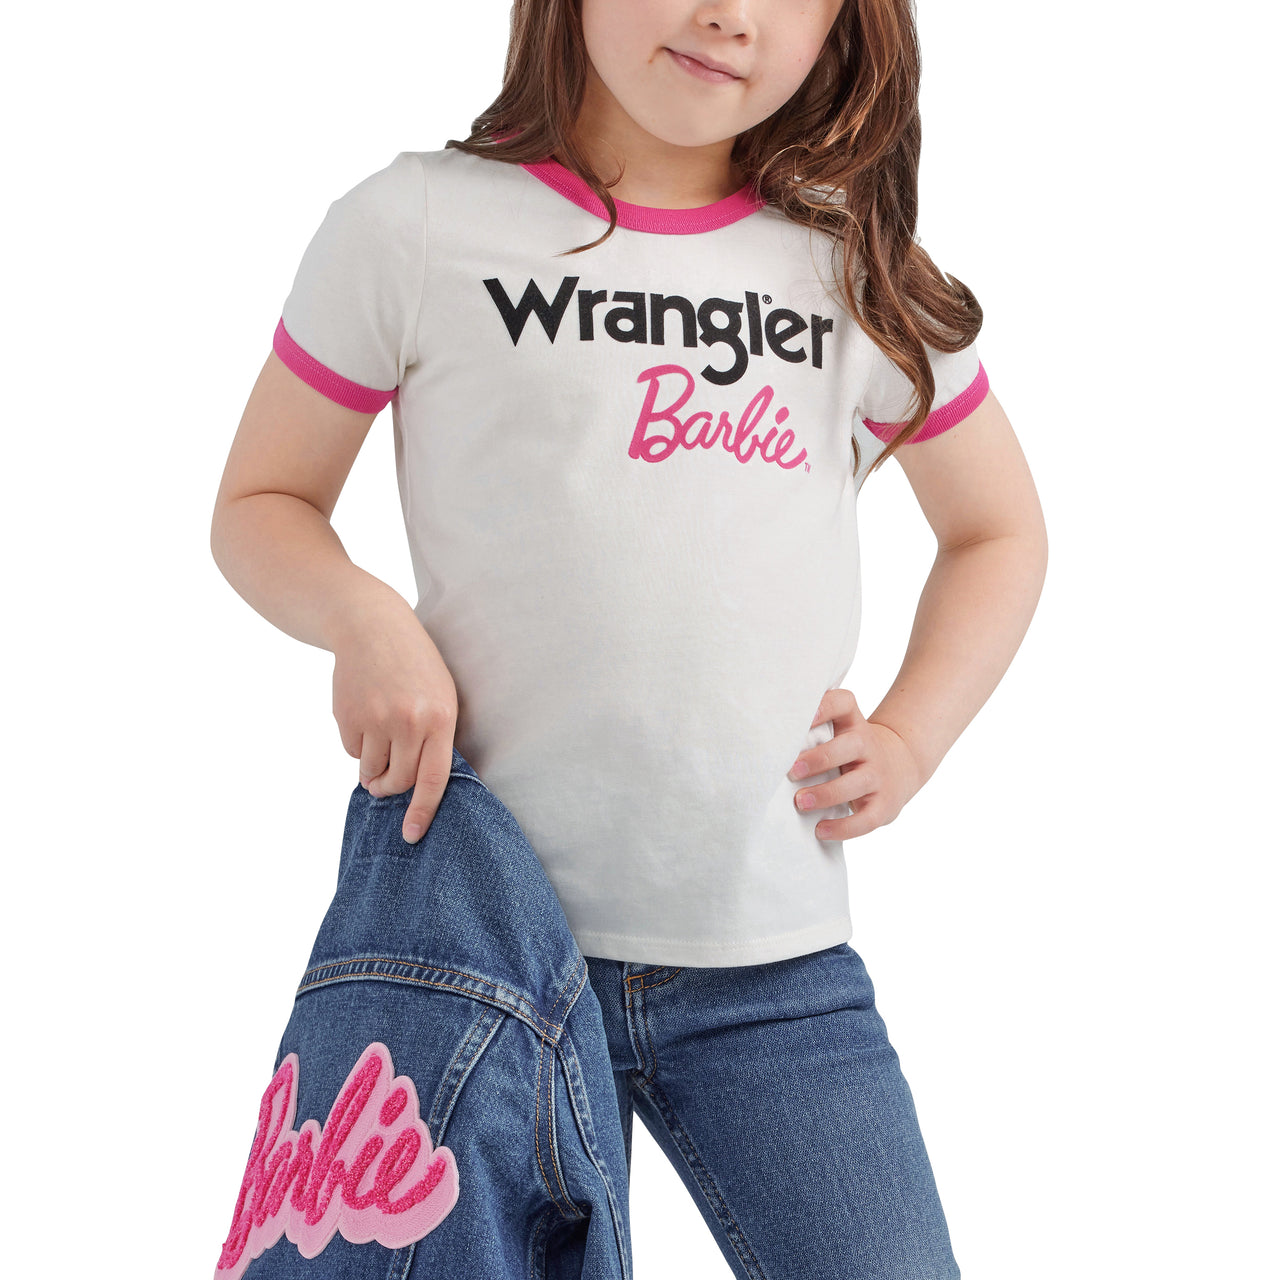 Wrangler X Barbie Girl's Ringer T-Shirt - White